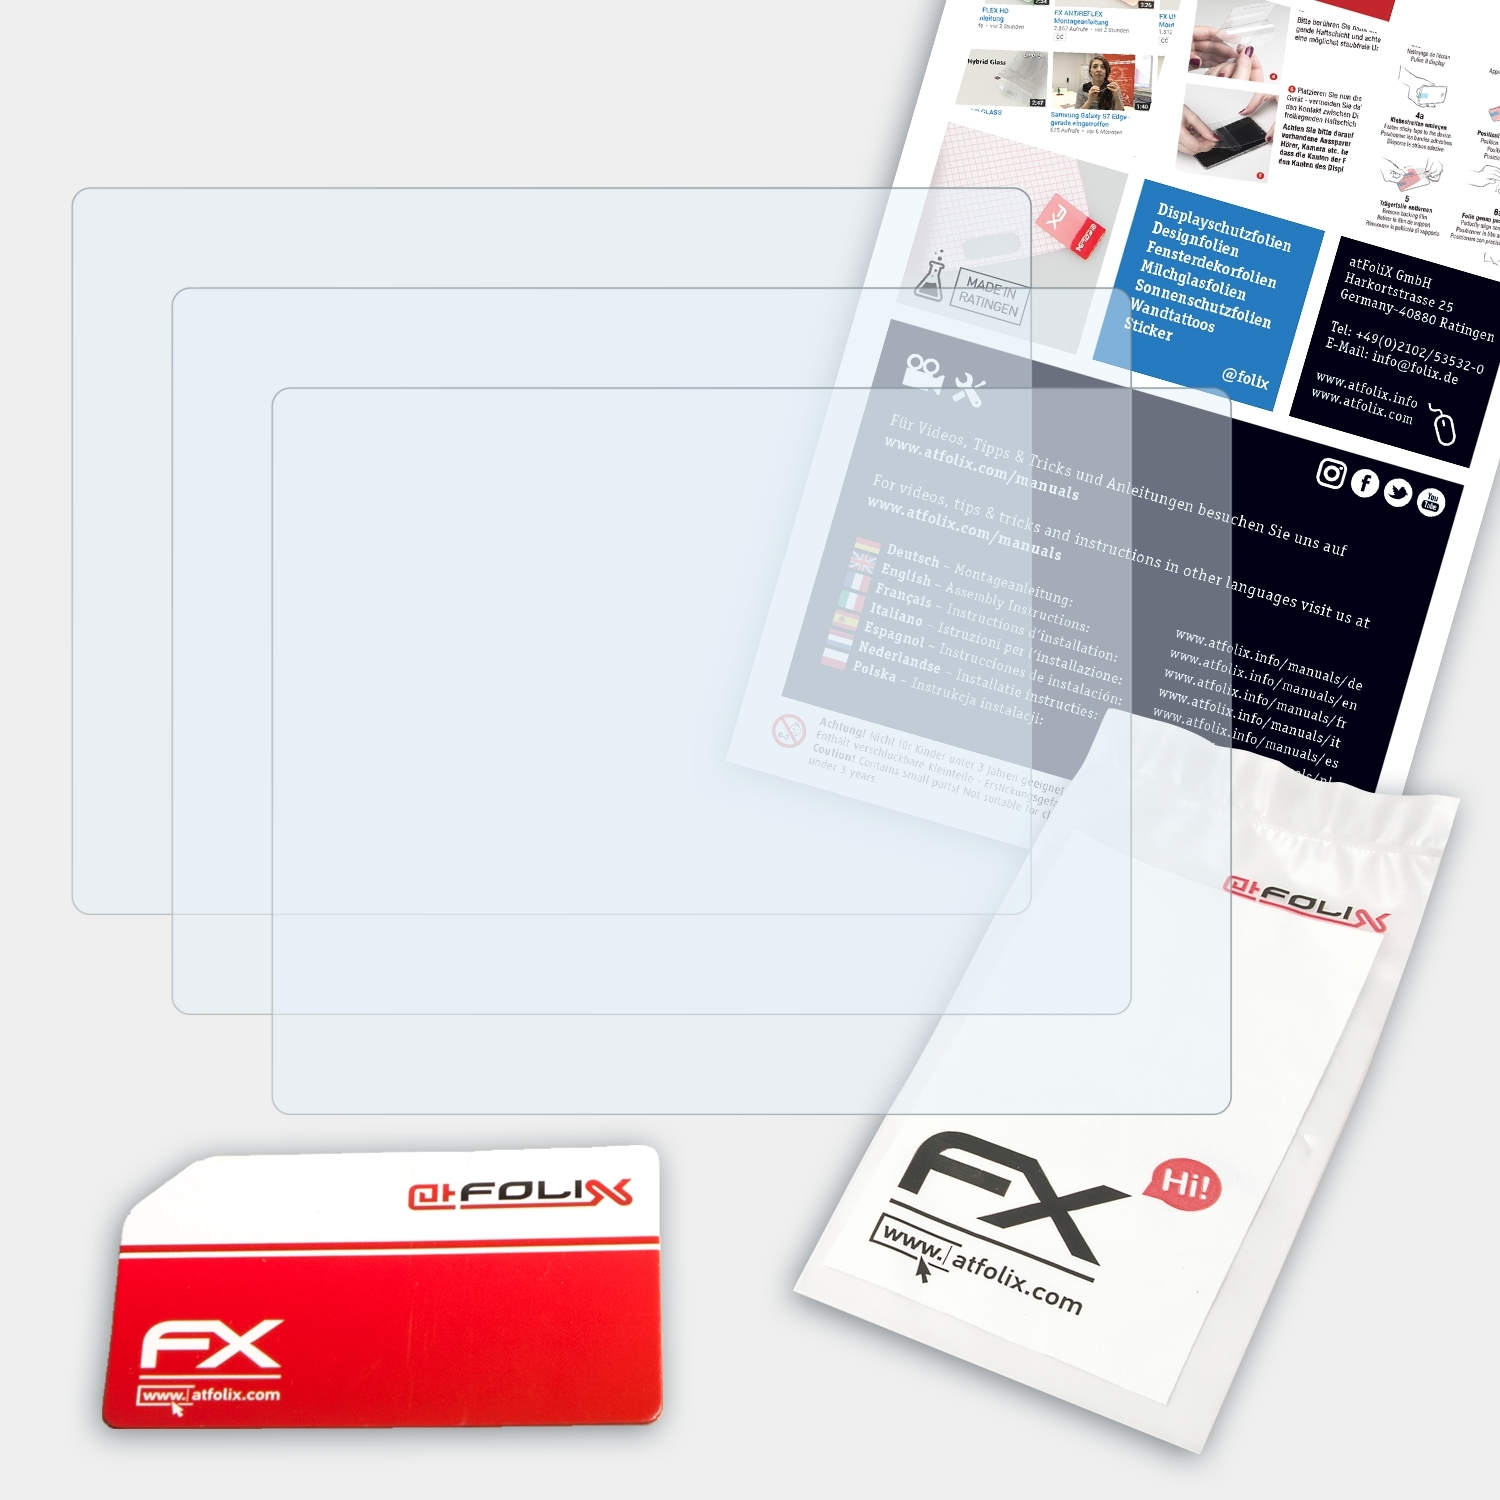 ATFOLIX 3x FX-Clear deluxe) Zumo Displayschutz(für Garmin 500